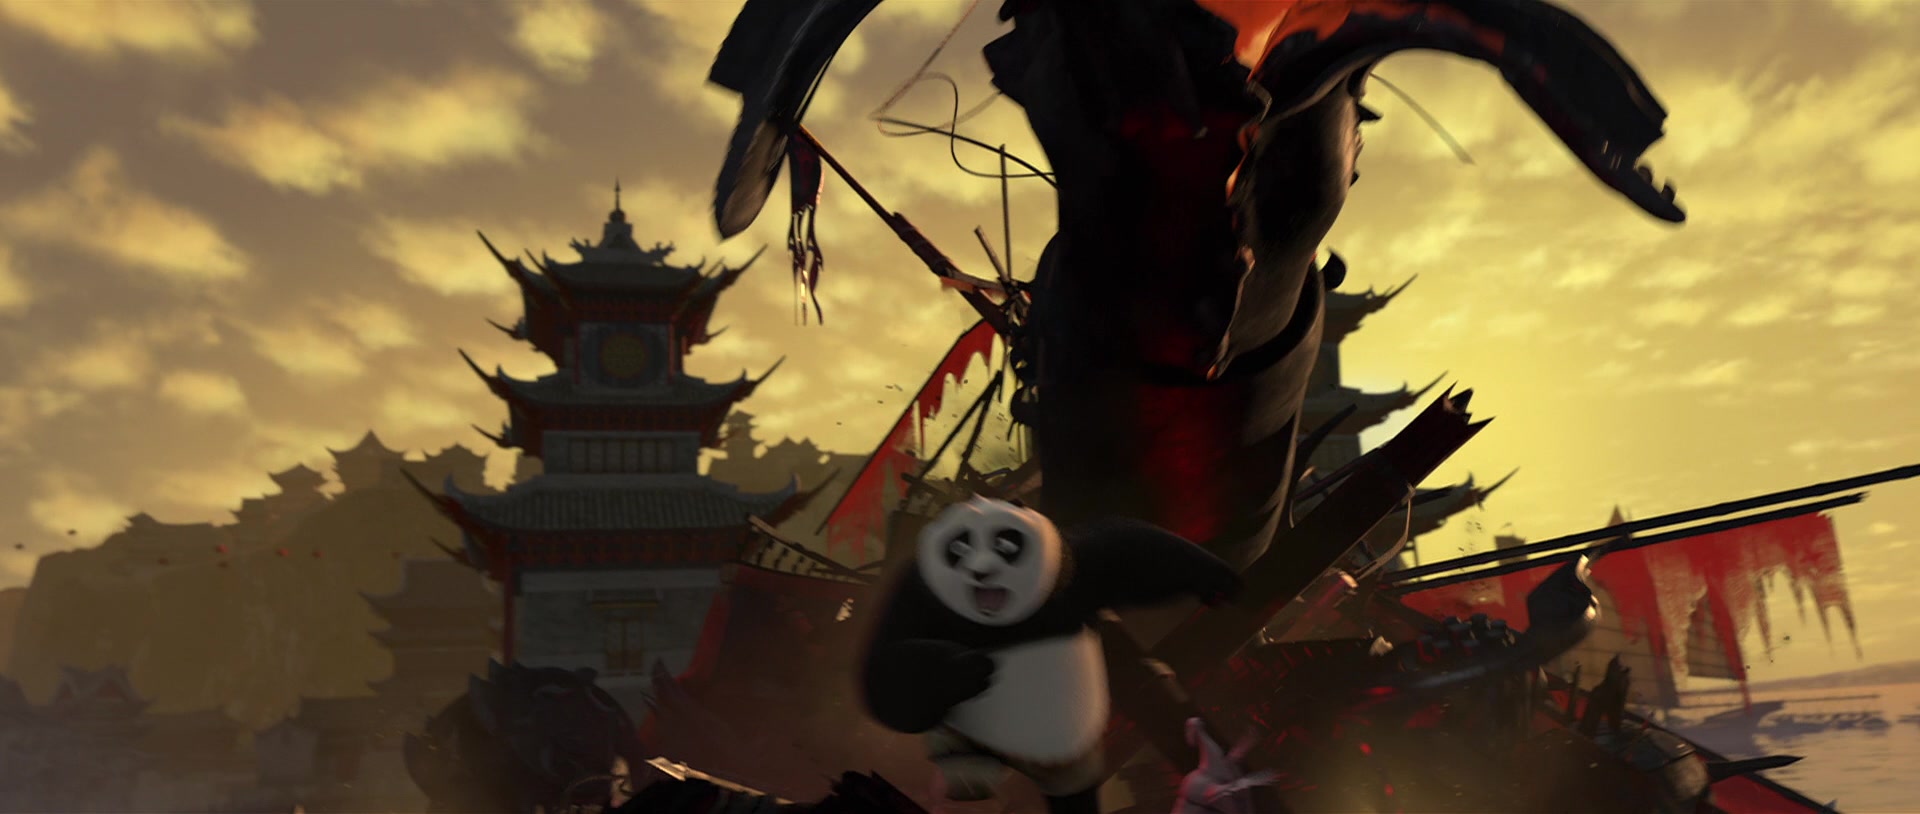 Kung Fu Panda 2 Screencap | Fancaps